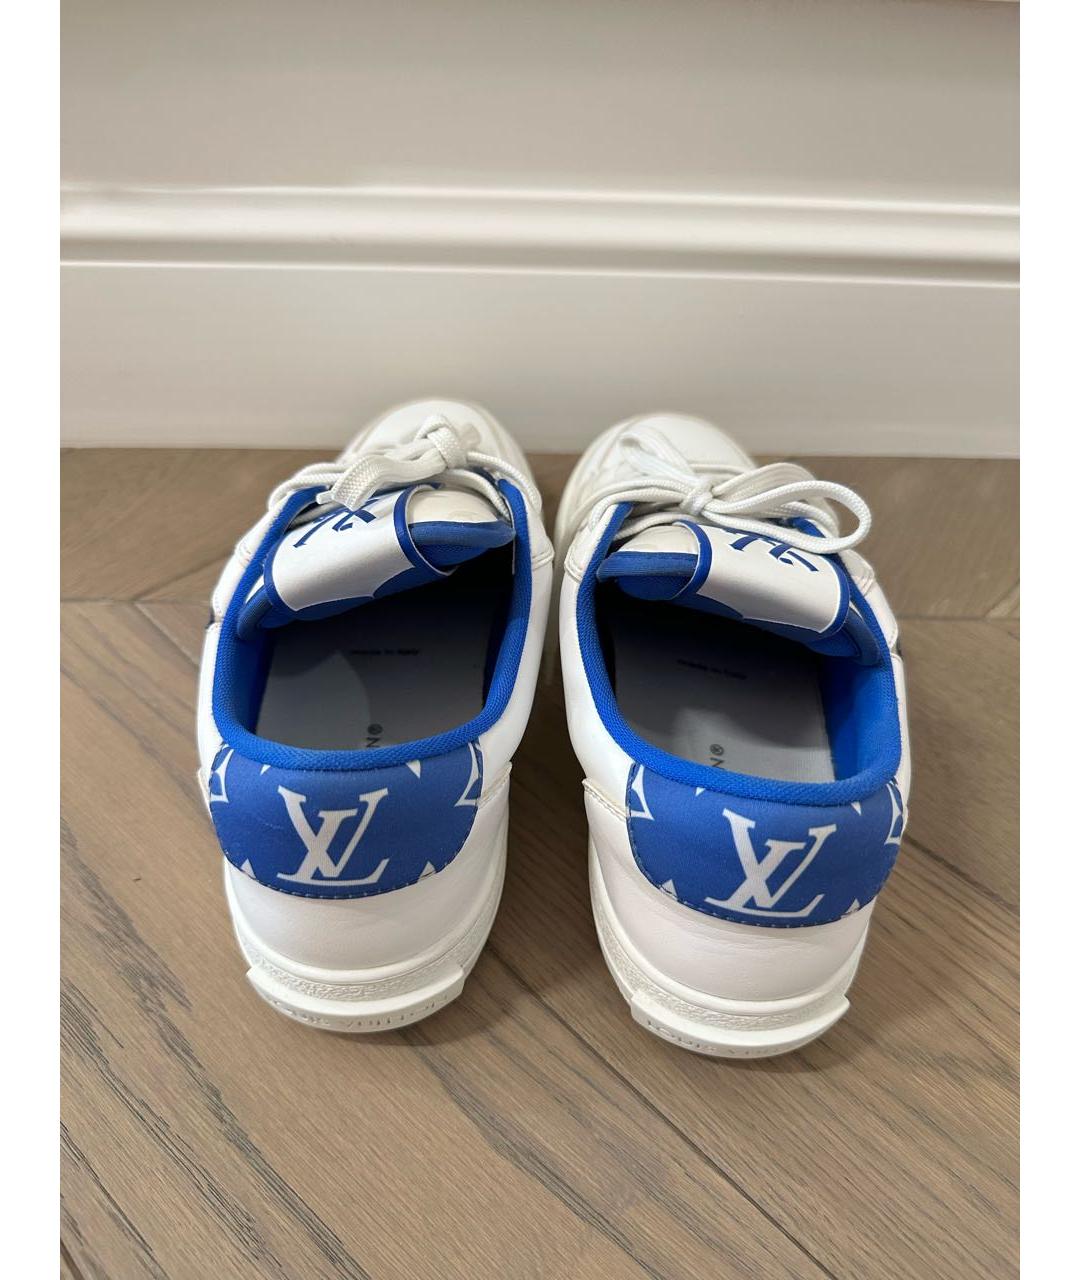 LOUIS VUITTON PRE-OWNED Белые кожаные низкие кроссовки / кеды, фото 4